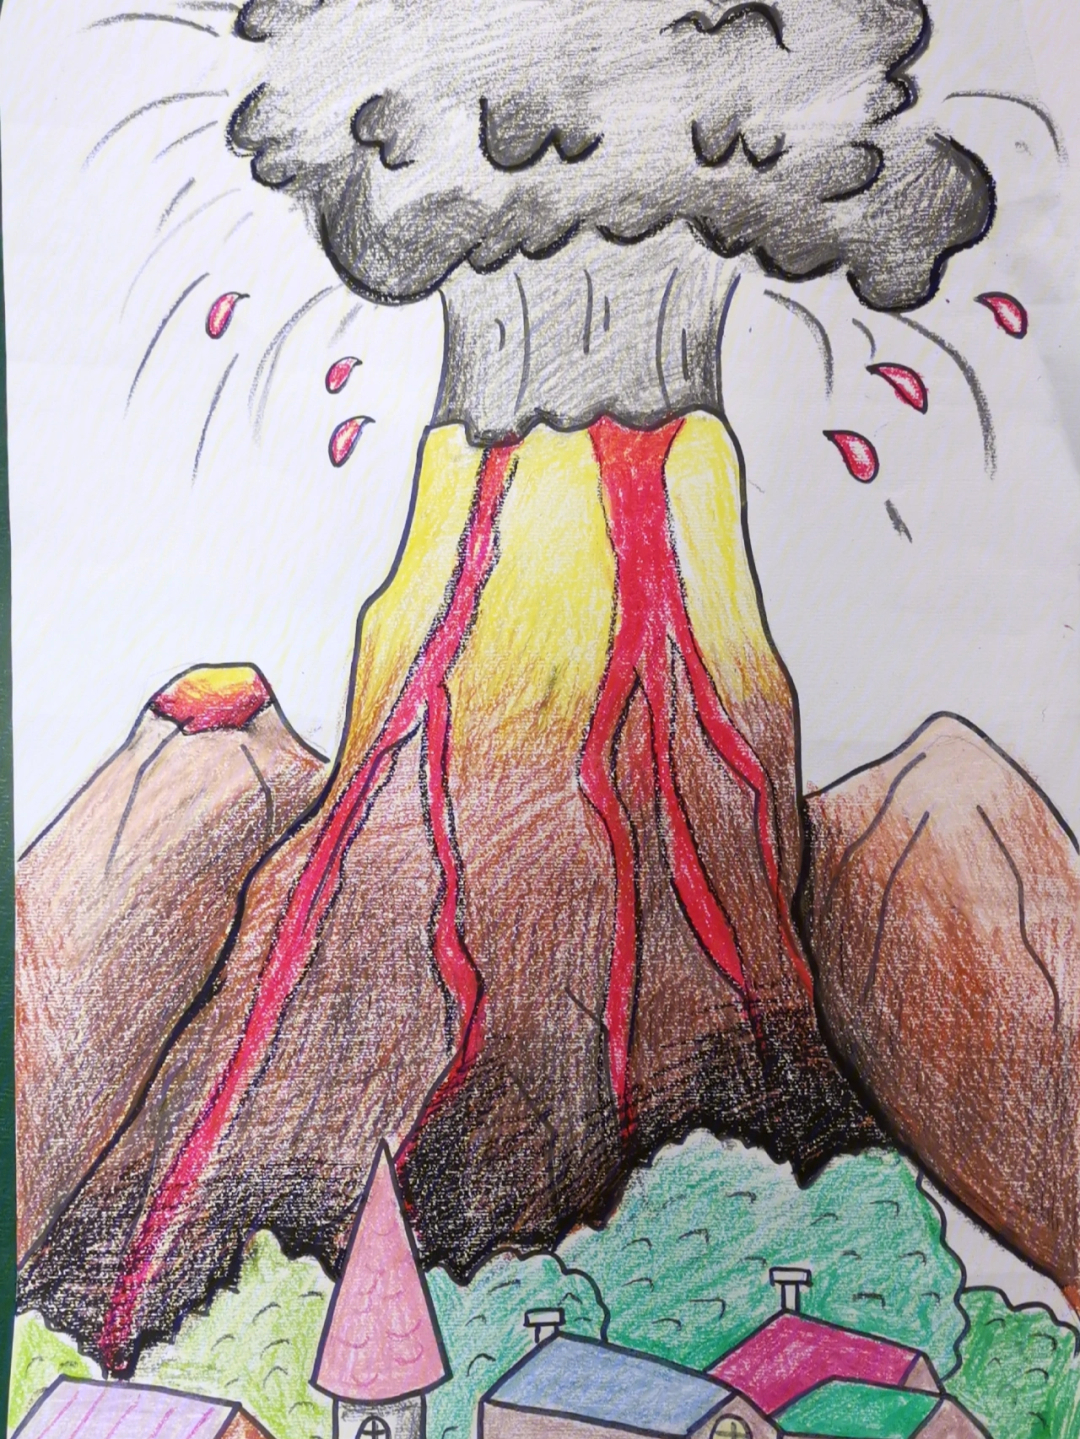 火山爆发危害简笔画图片